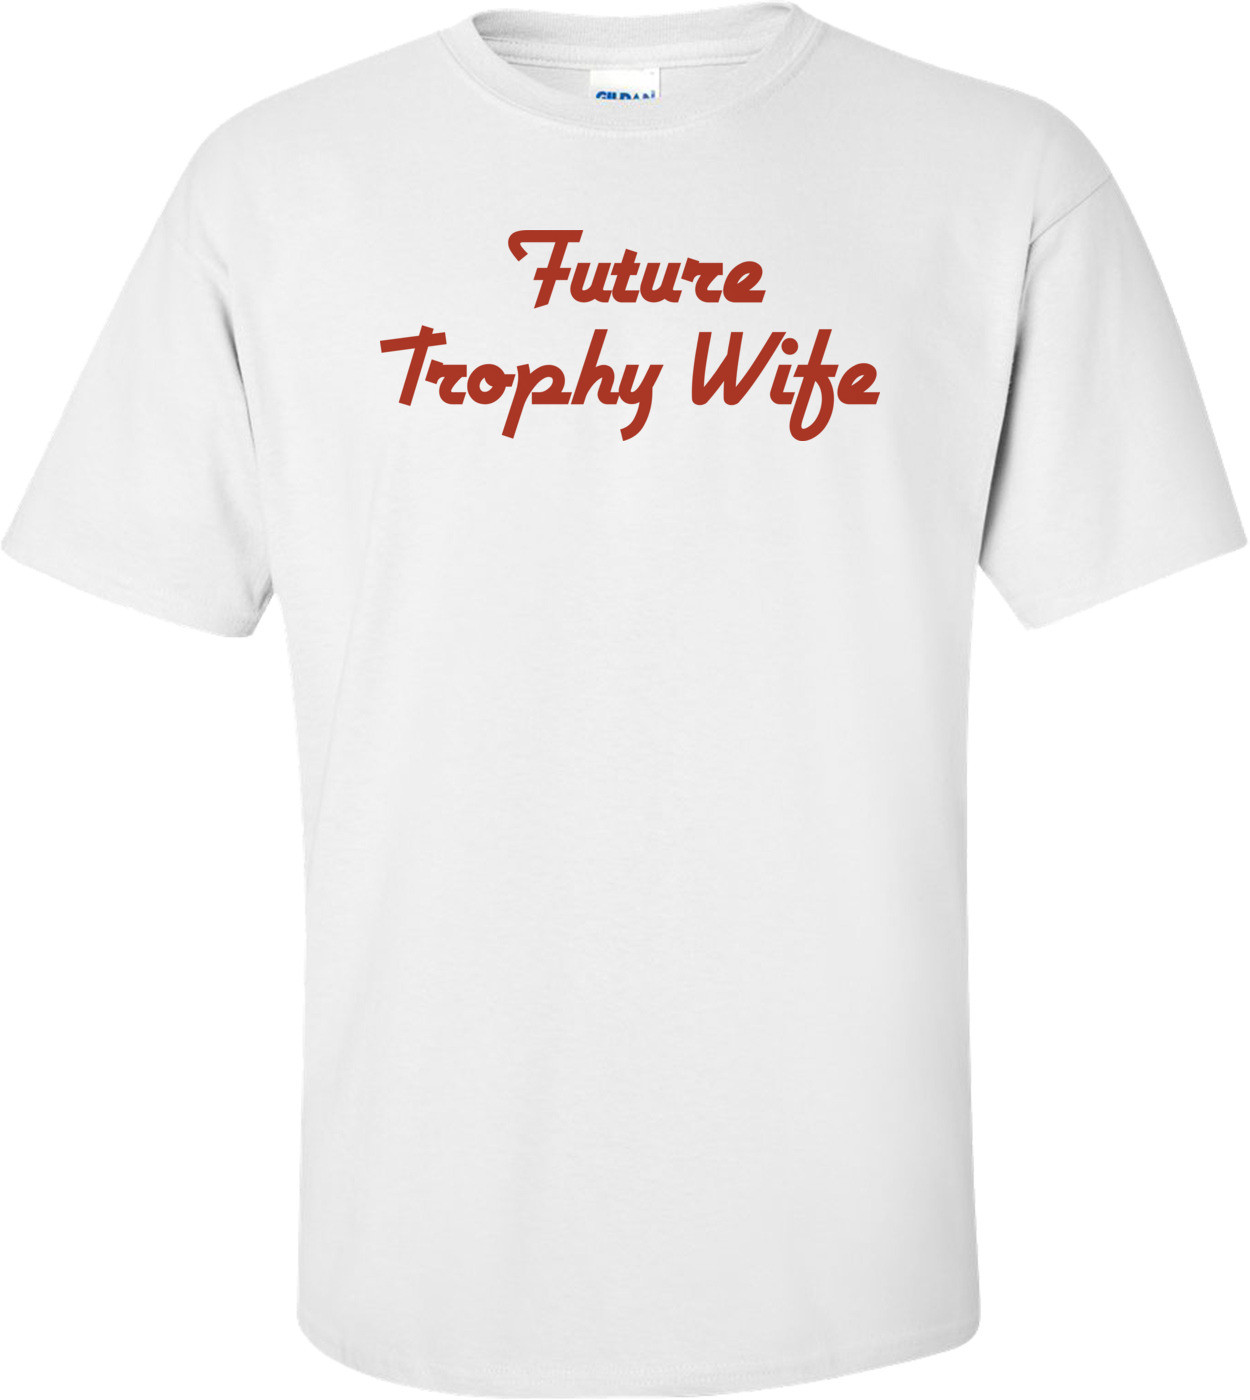 Future Trophy Wife T-shirt